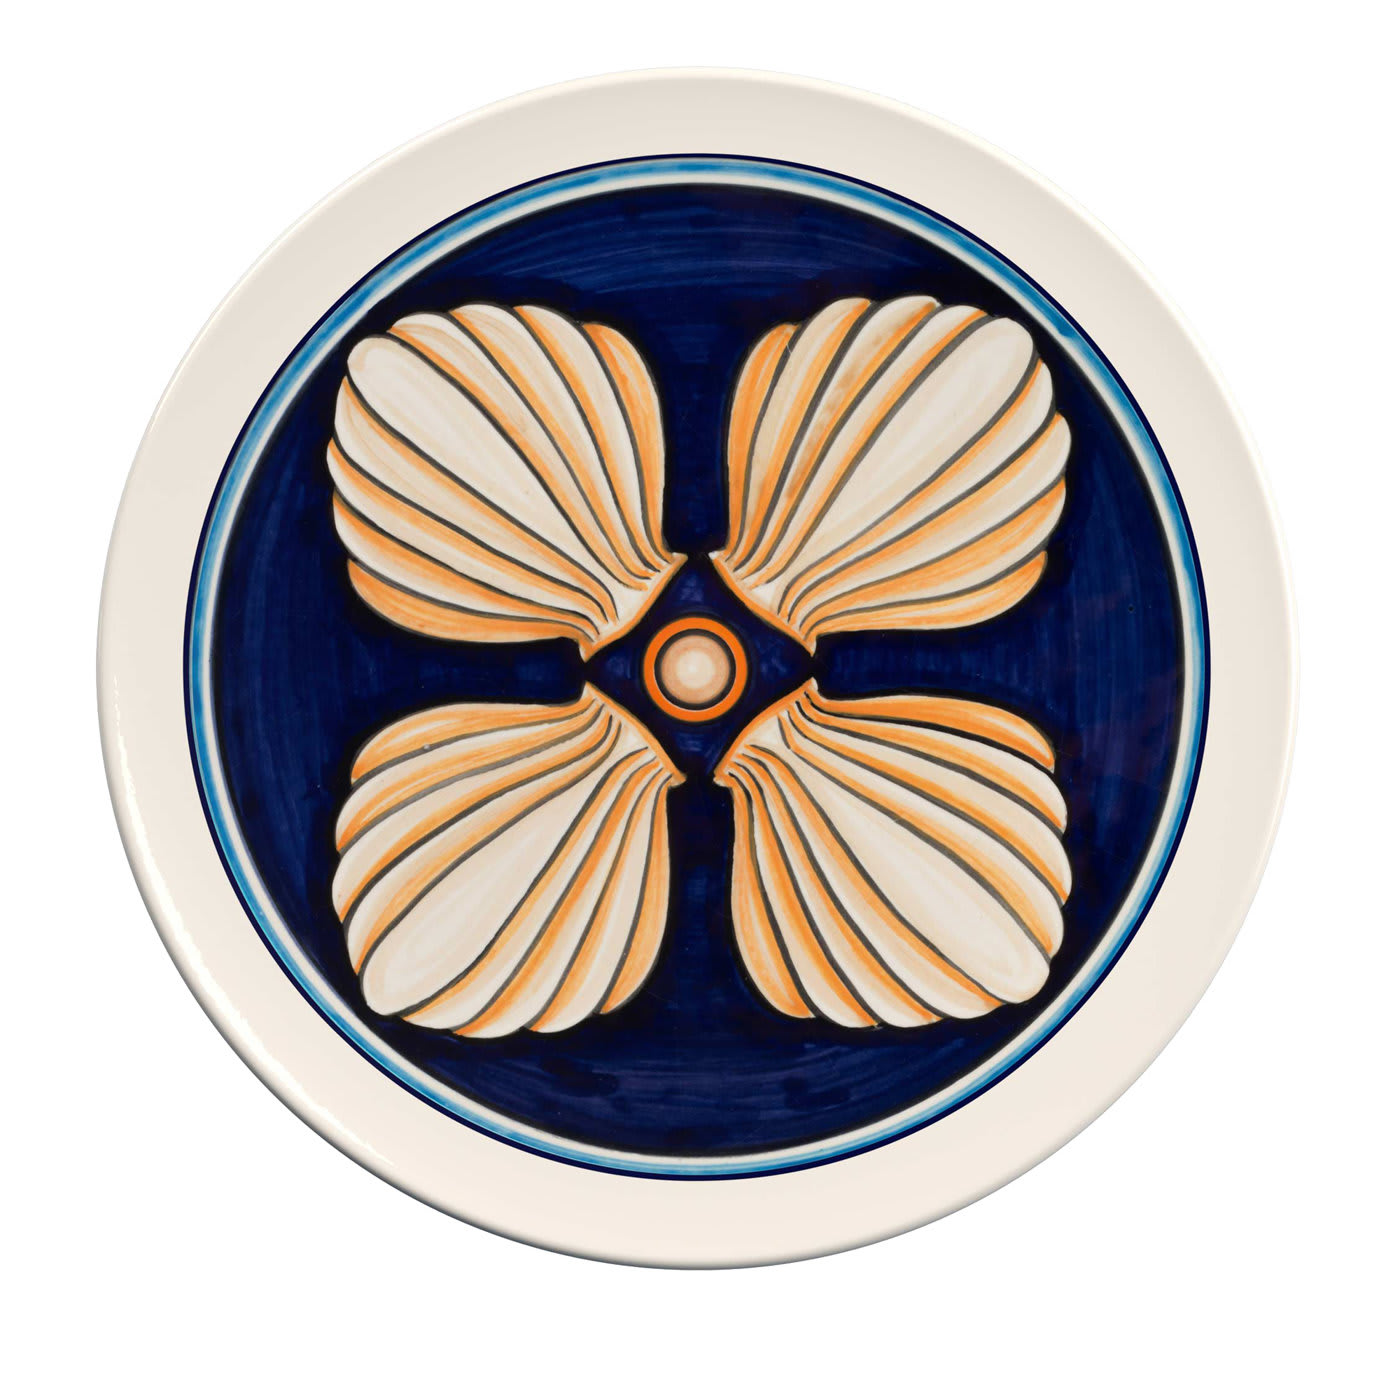 Colapesce Conchiglie Decorative Plate #1 - Crisodora